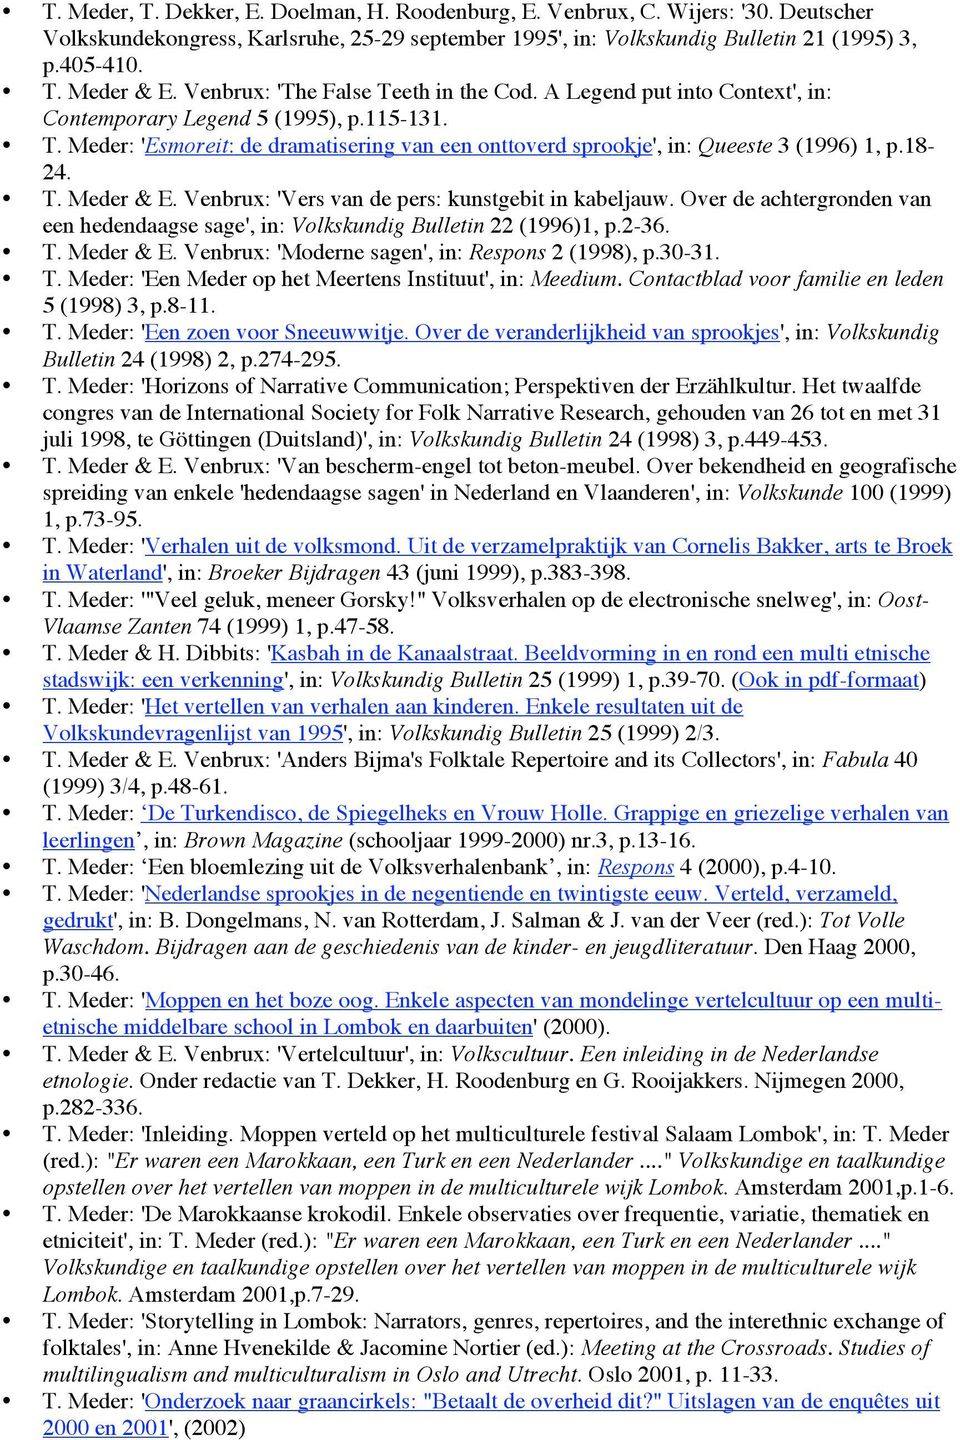 18-24. T. Meder & E. Venbrux: 'Vers van de pers: kunstgebit in kabeljauw. Over de achtergronden van een hedendaagse sage', in: Volkskundig Bulletin 22 (1996)1, p.2-36. T. Meder & E. Venbrux: 'Moderne sagen', in: Respons 2 (1998), p.